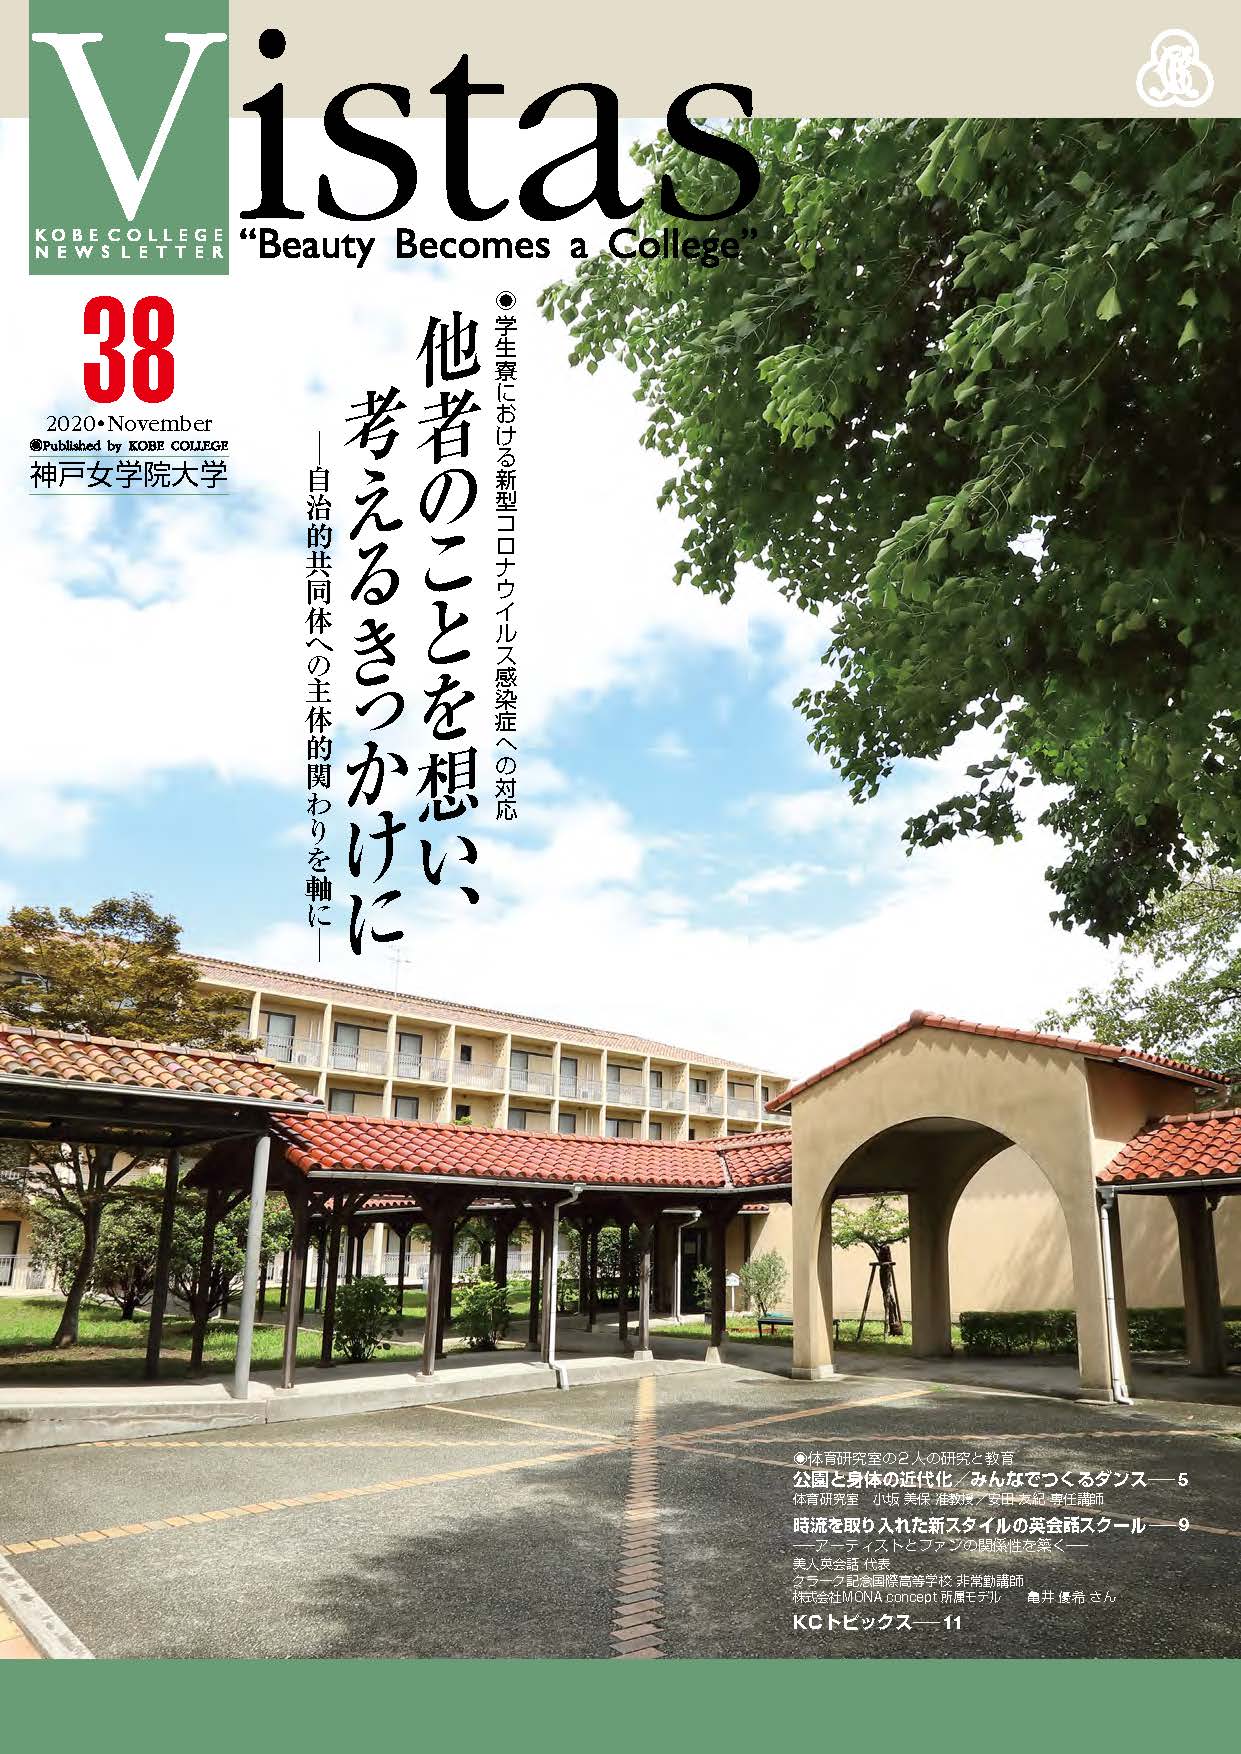 大学広報誌 Vistas 神戸女学院大学について 大学の概要 神戸女学院大学 Kobe College